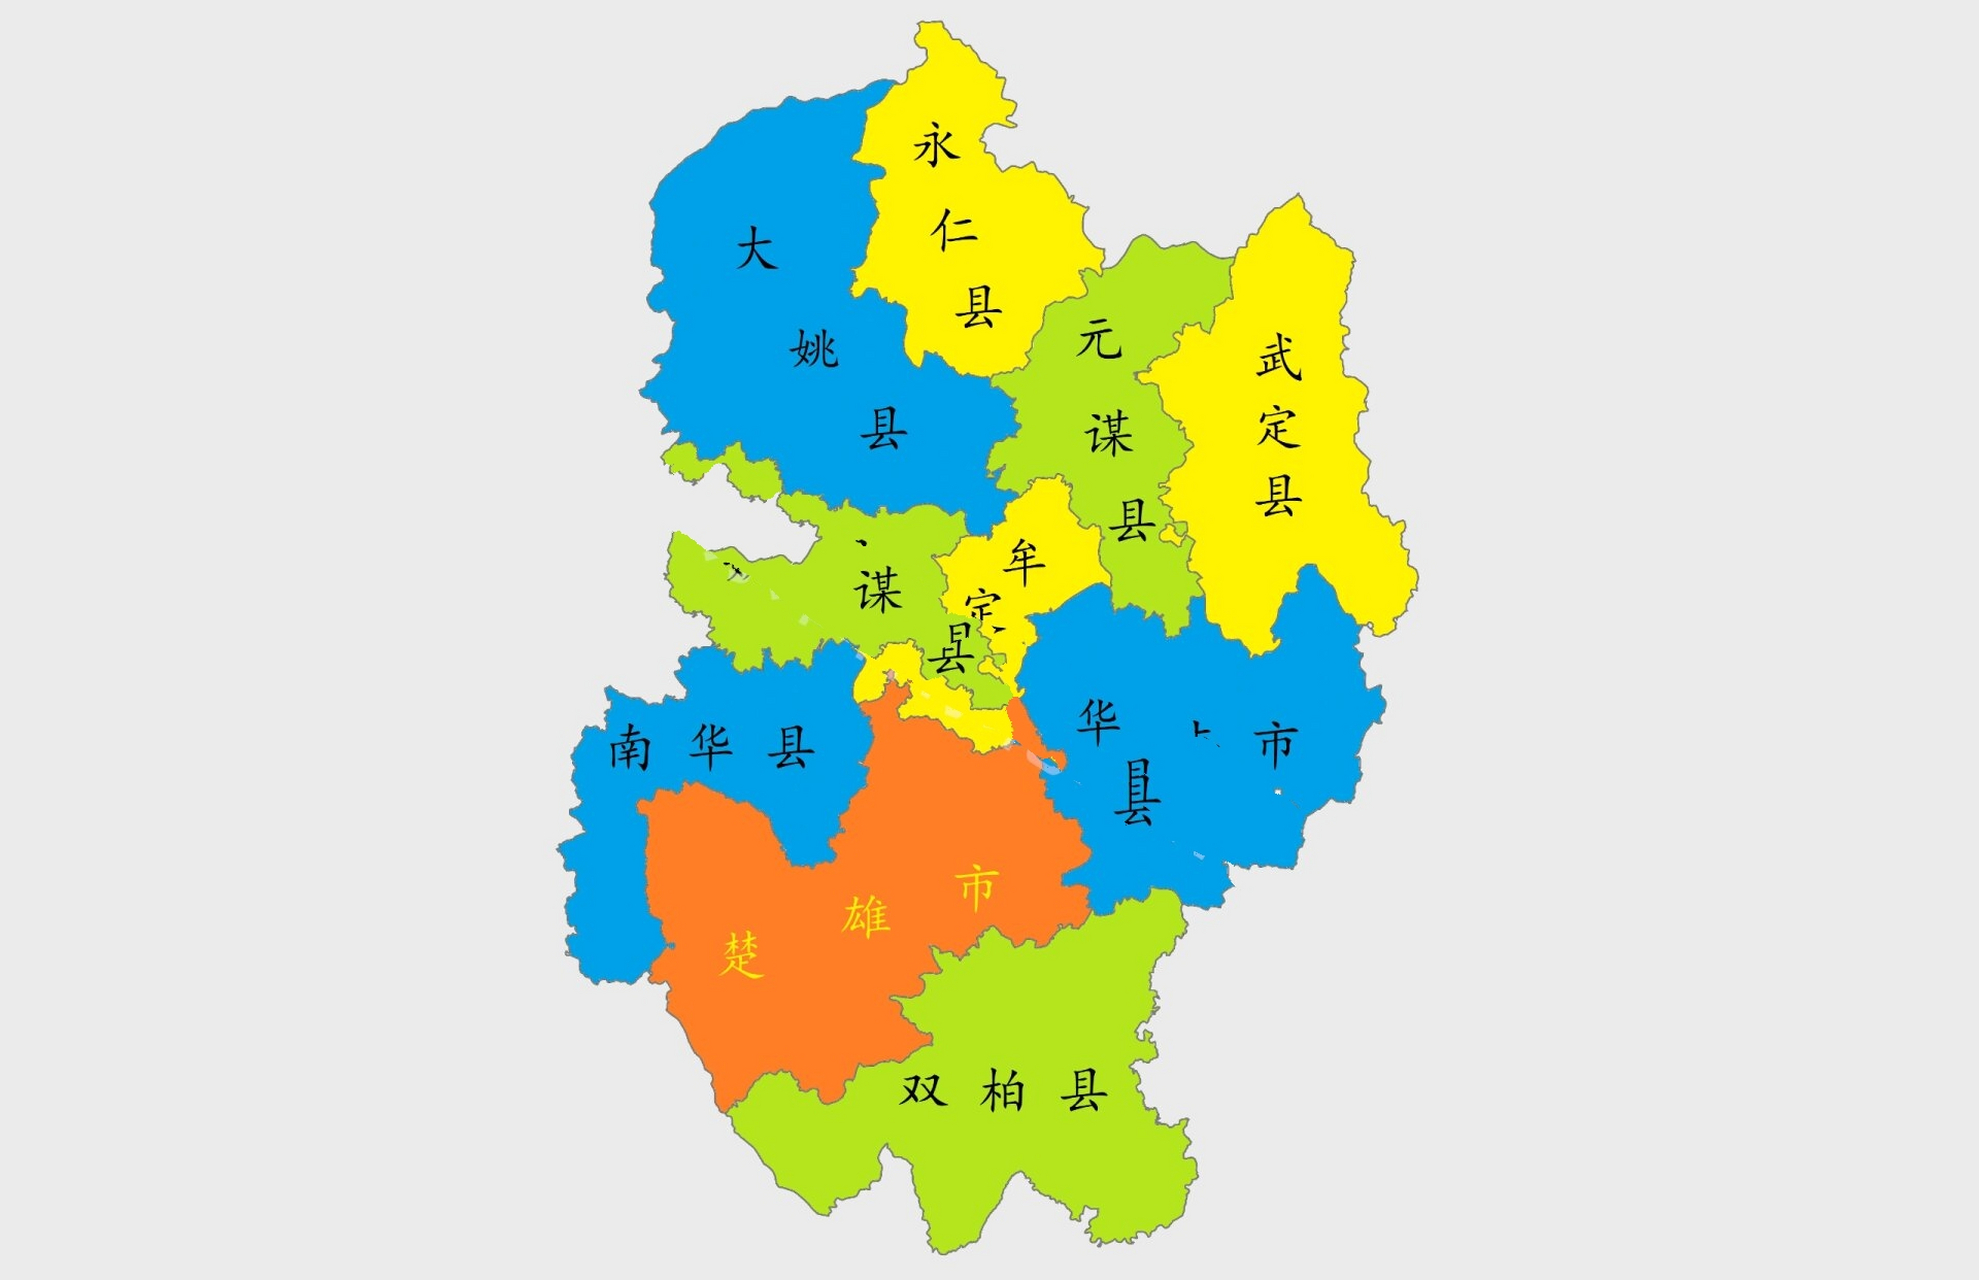 【区划地图】云南行政区划地图@楚雄州 楚雄彝族自治州,位于云南省